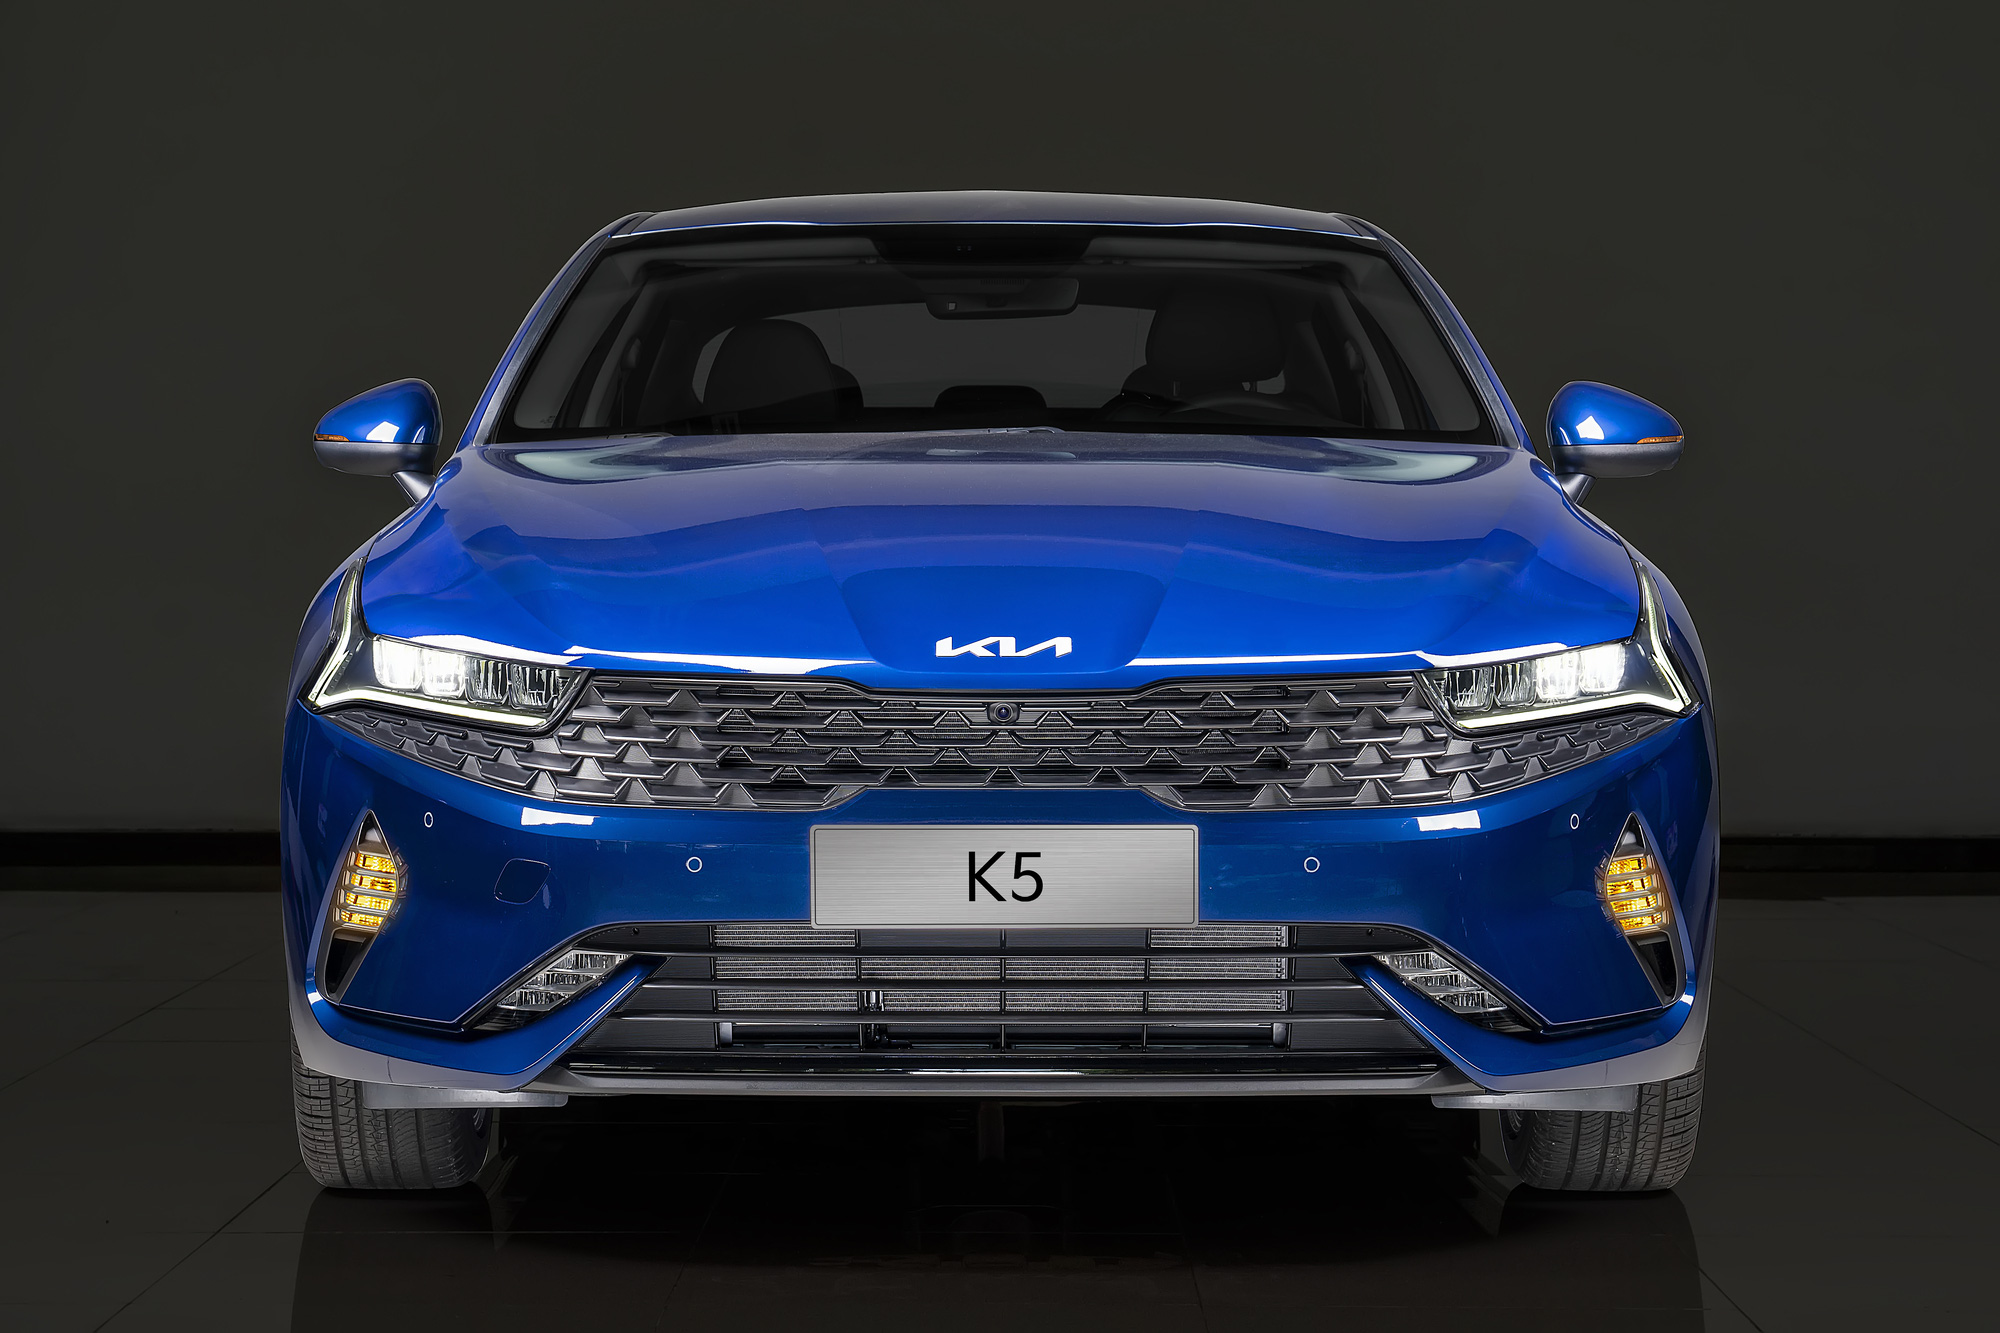 Kia K5 - một mẫu sedan được trang bị đầy đủ những tiện nghi cao cấp và hấp dẫn tinh tế không chỉ bởi tính năng động cơ mà còn là mức độ tiết kiệm nhiên liệu. Hãy tham khảo những hình ảnh đẹp về Kia K5 để cảm nhận được sự sang trọng và đẳng cấp của xe này.